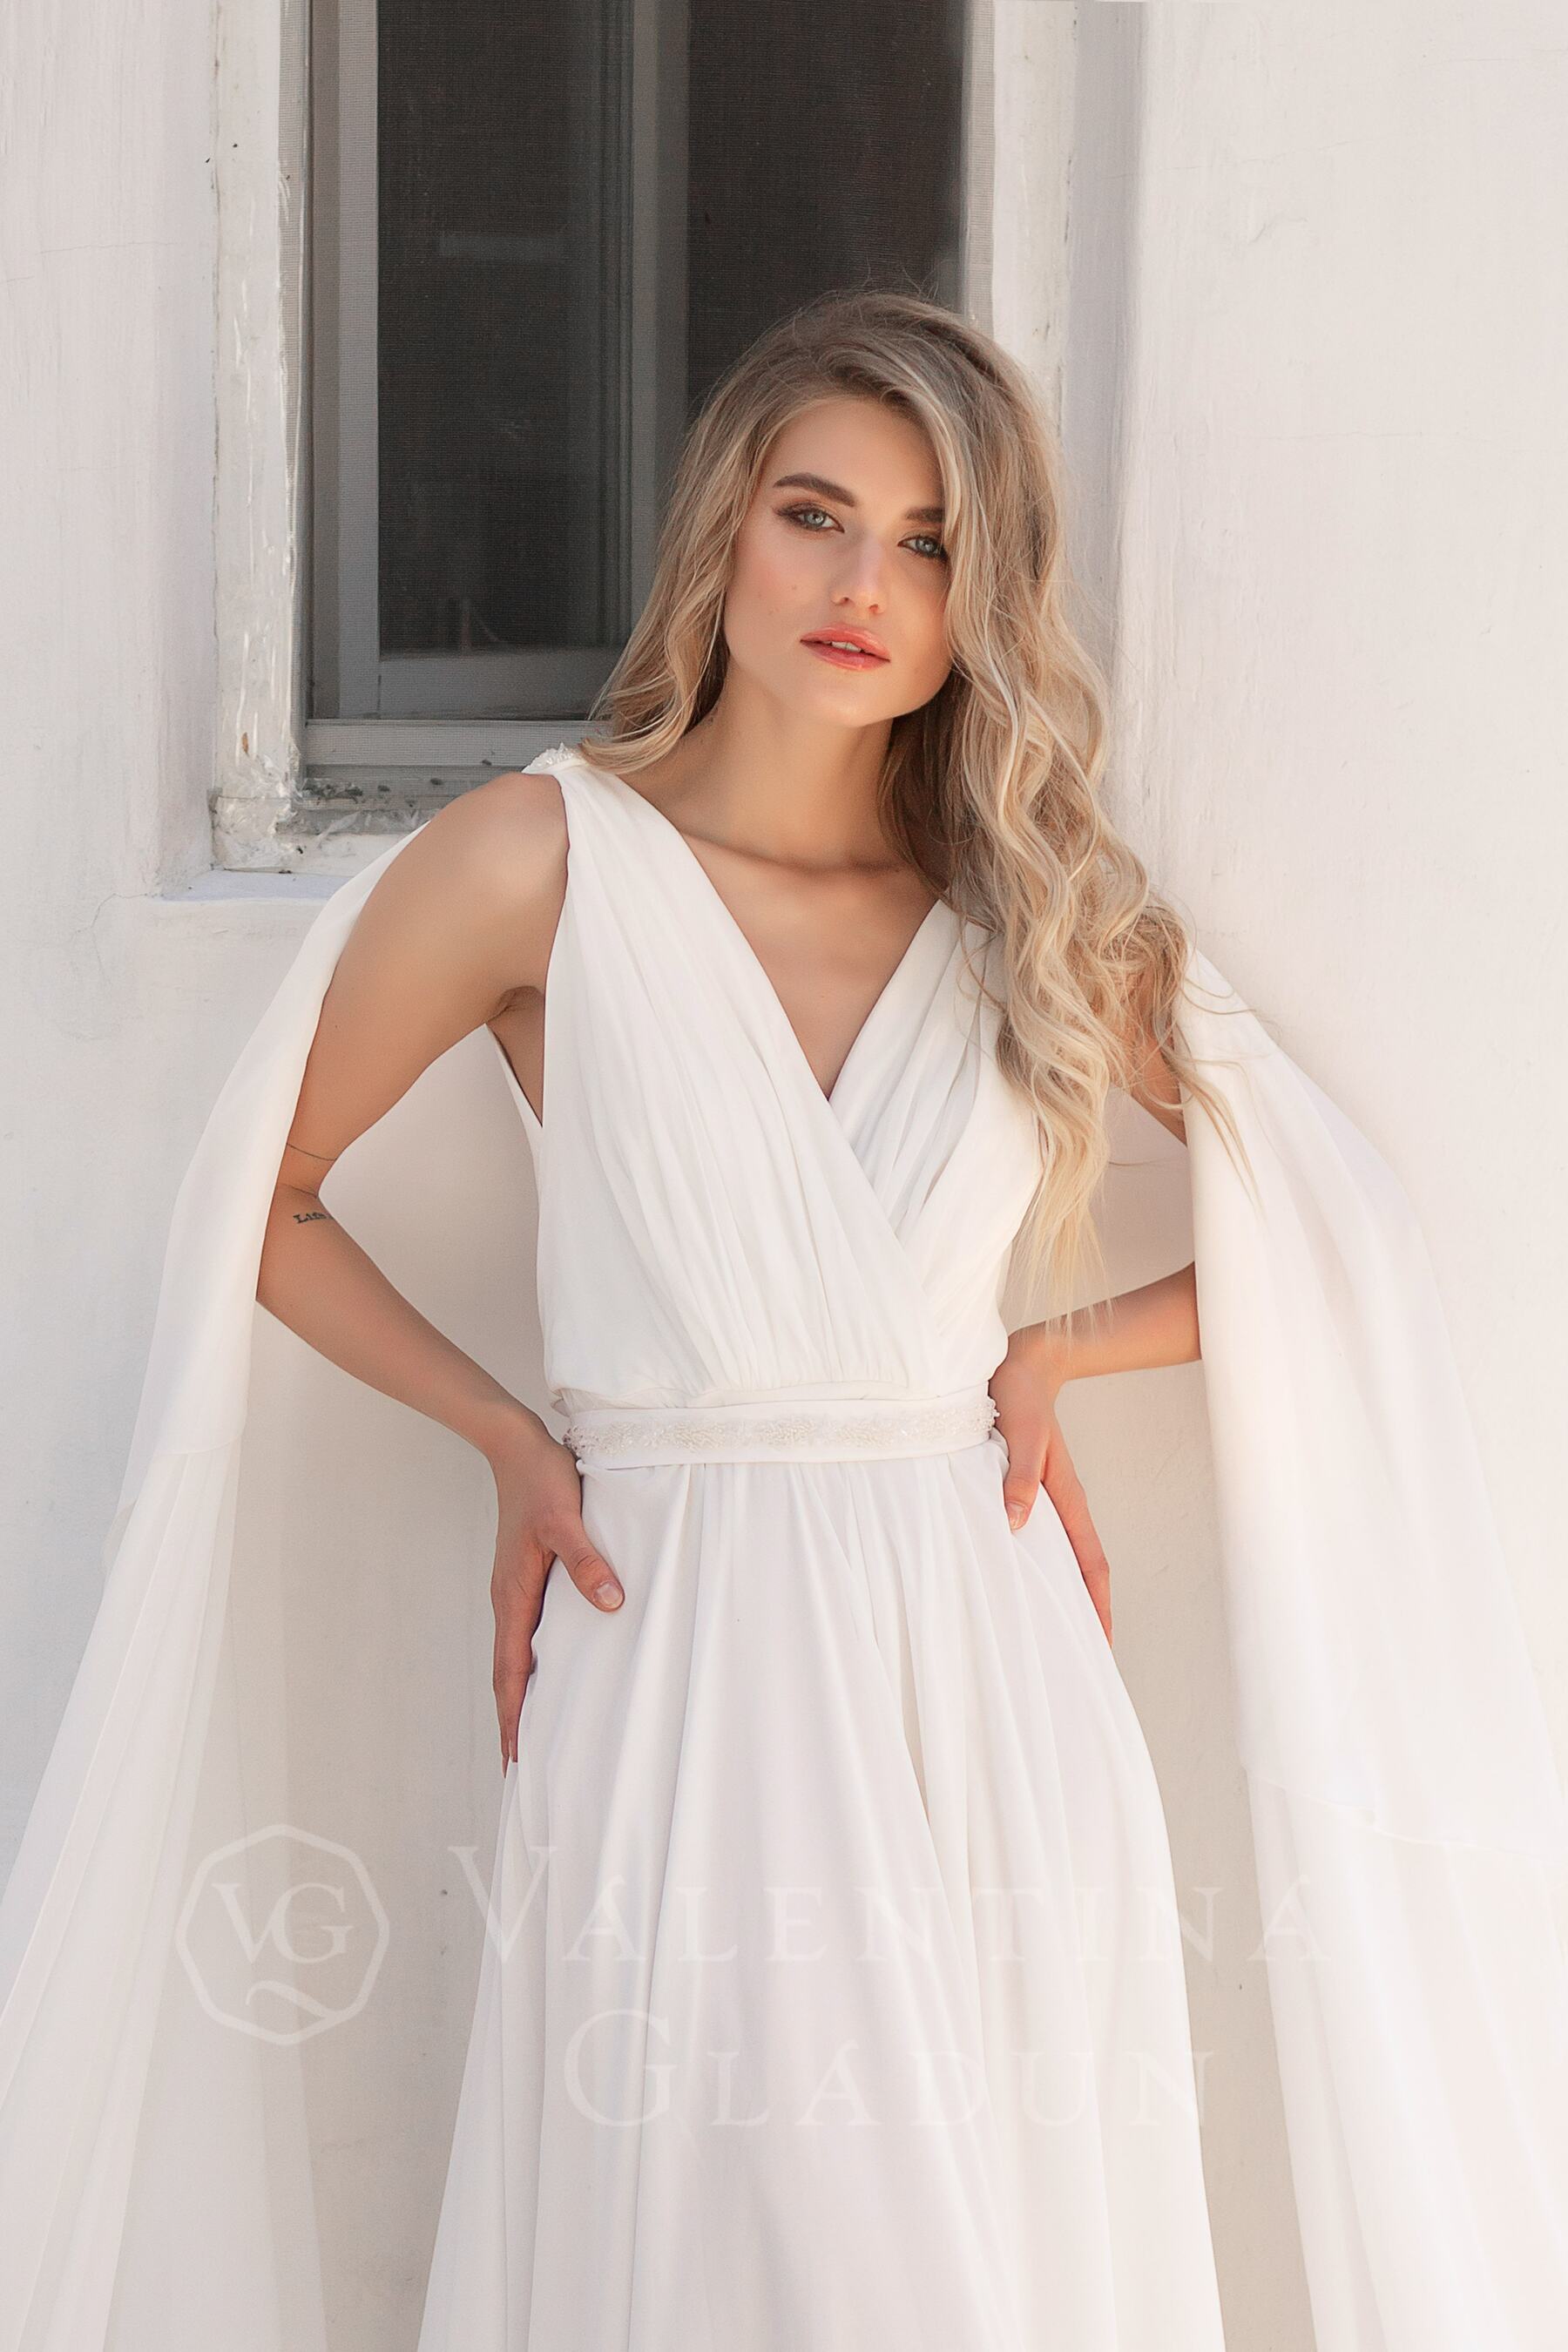 Ботичелли - свадебное платье 2020 от Валентины Гладун